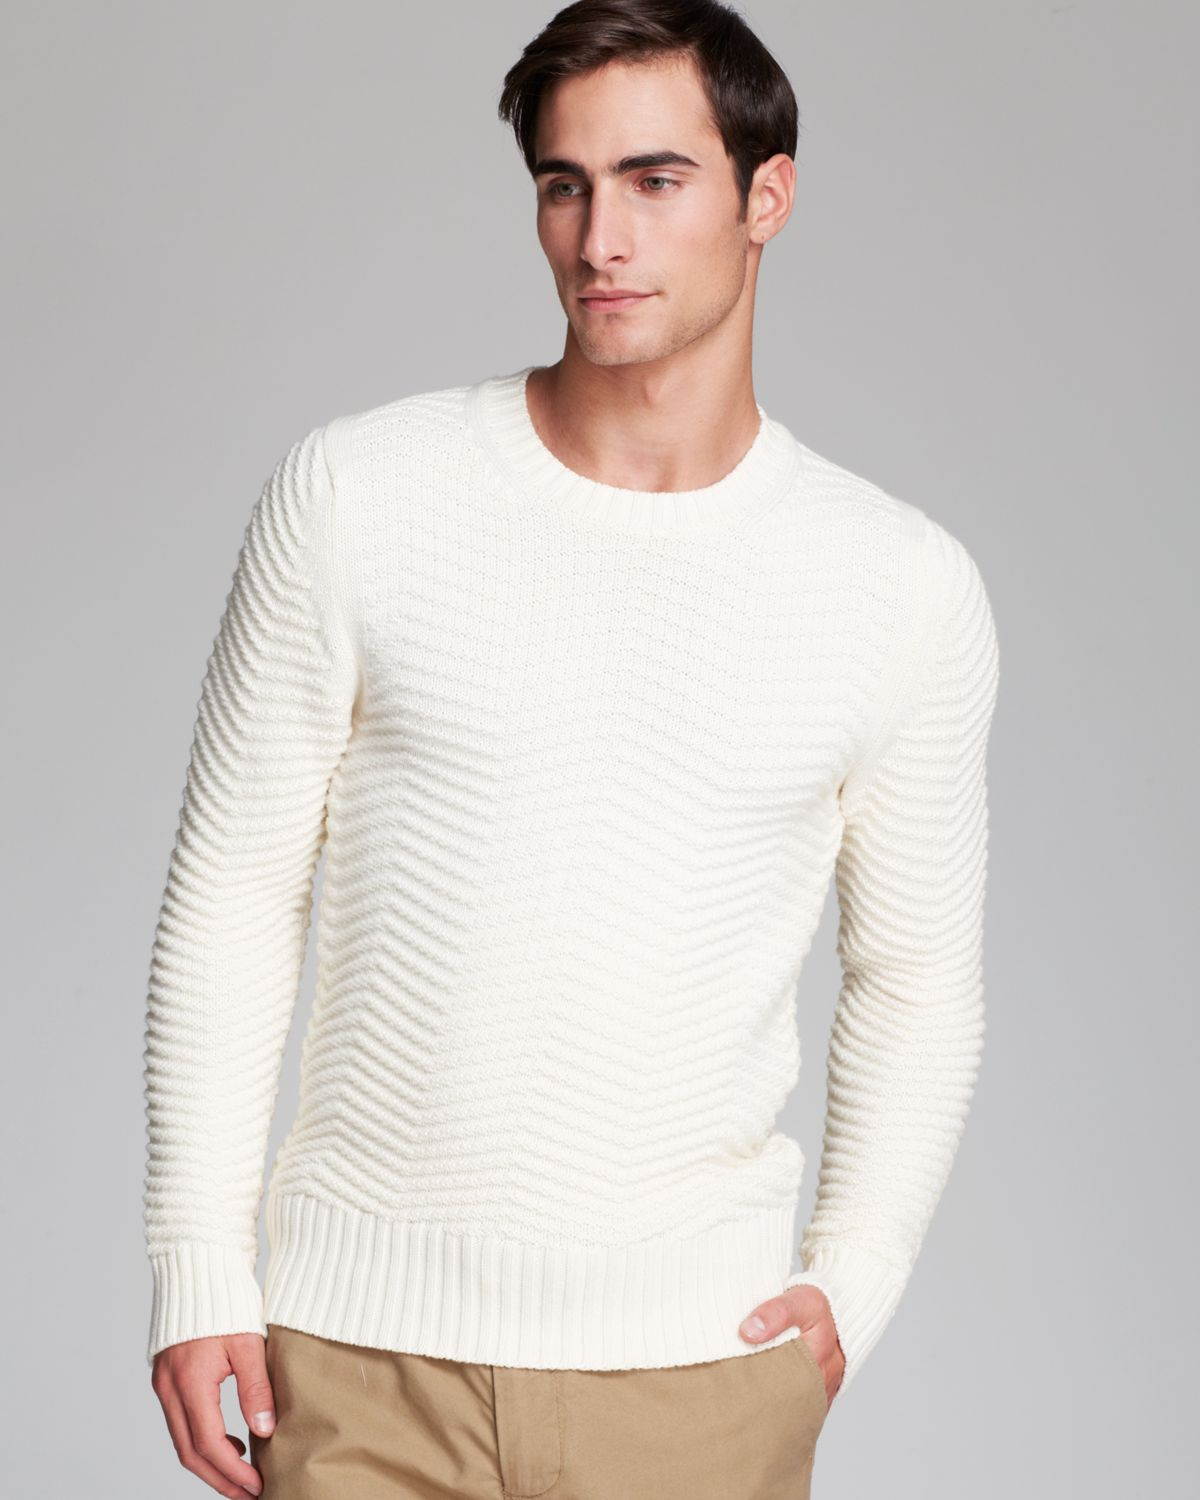 Вайлдберриз мужские свитера. Libera Vita свитер мужской белый. Белый джемпер мужской. Мужчина в белом свитере. Белая вязаная водолазка мужская.